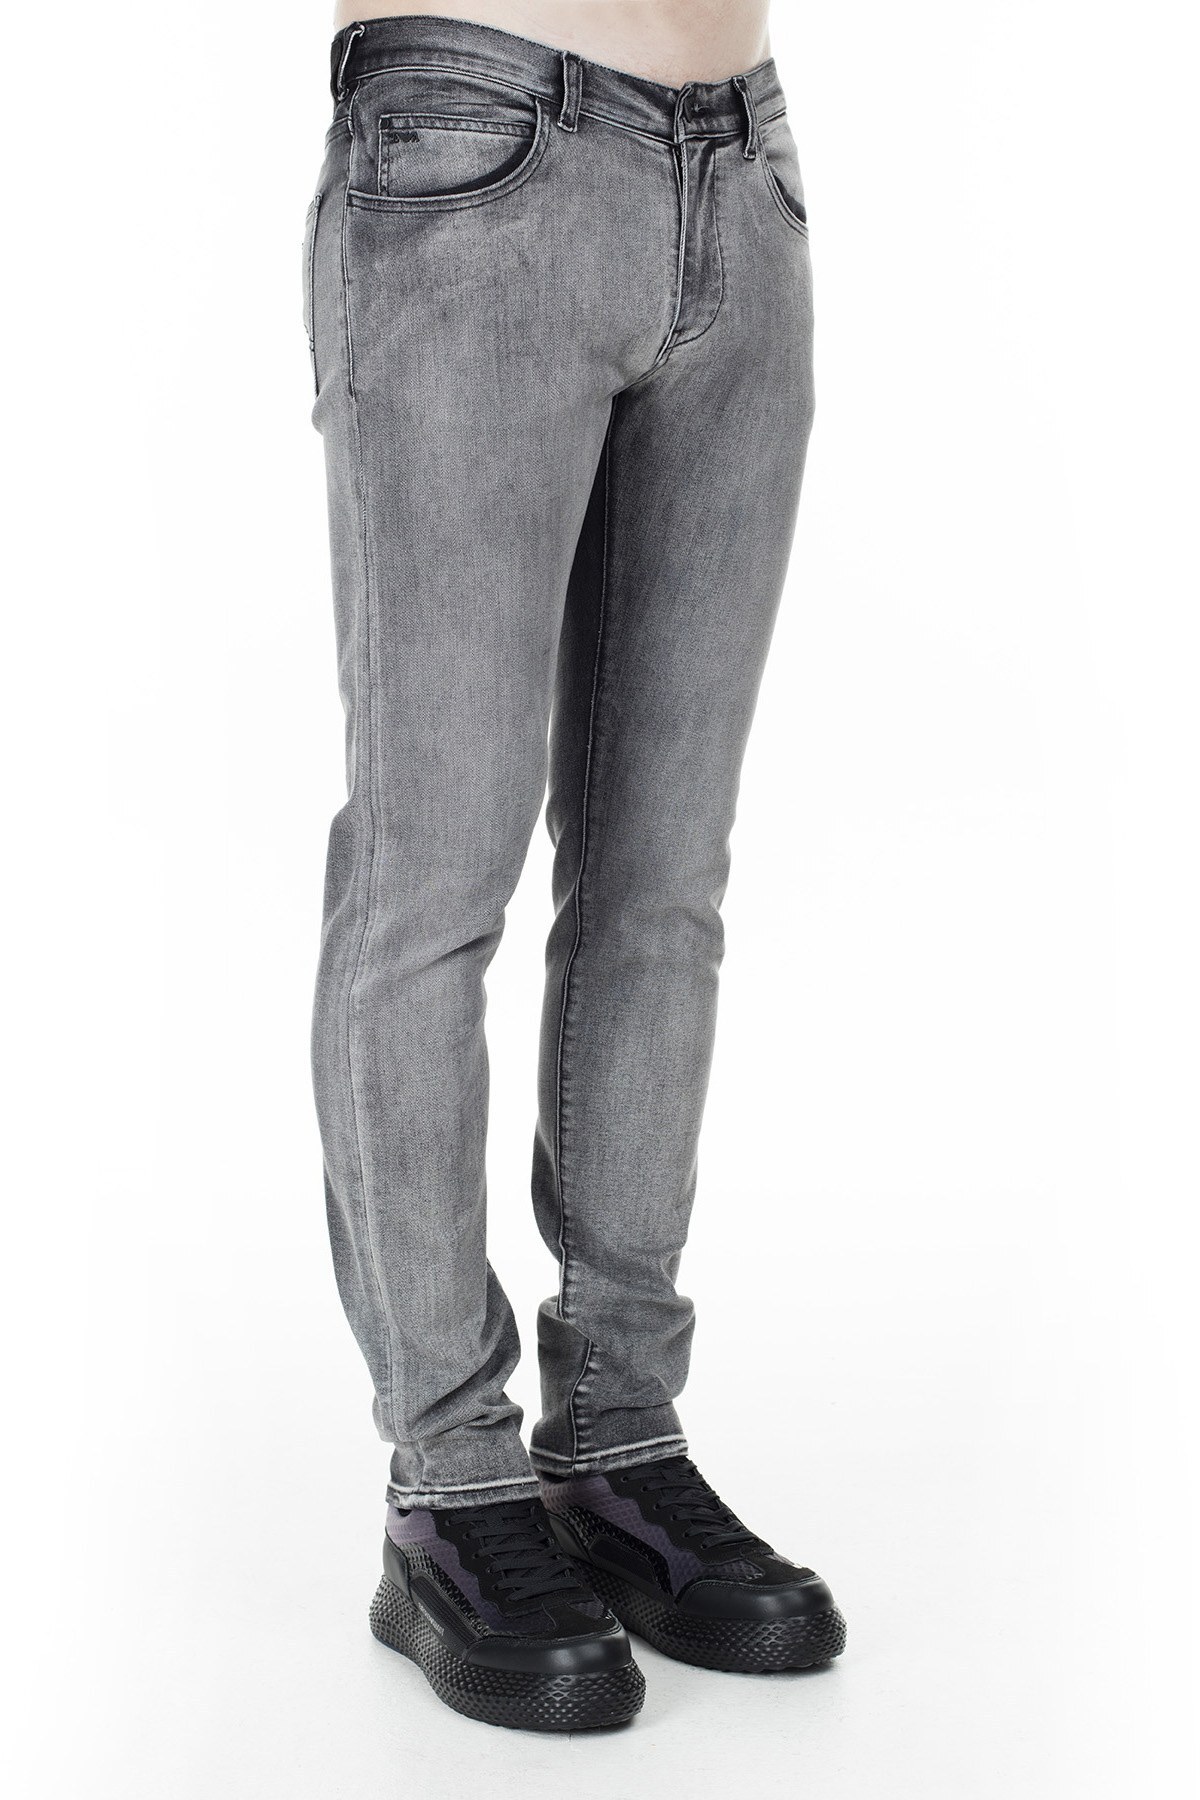 Emporio Armani J10 Jeans Erkek Kot Pantolon 6G1J10 1D6MZ 0644 GRİ